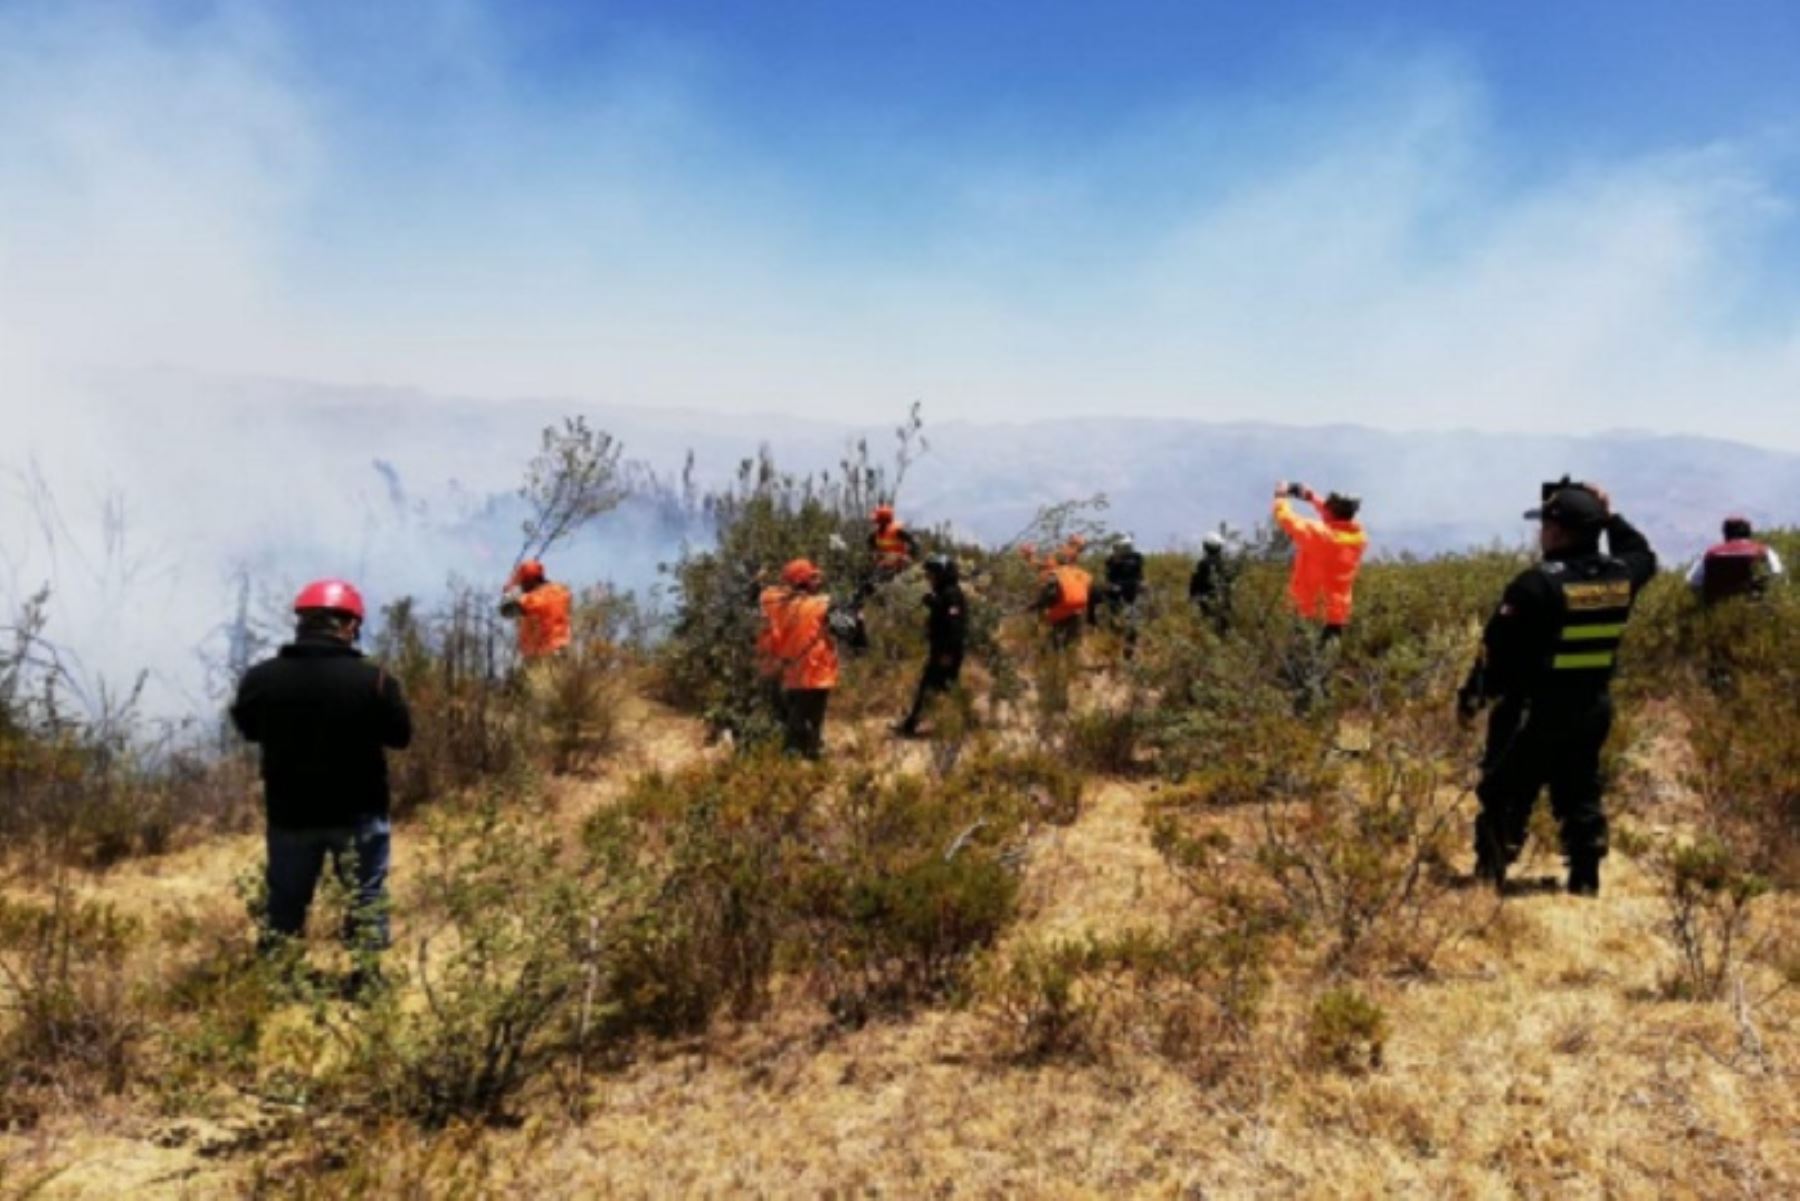 Personal de bomberos y de la municipalidad provincial de Santa lograron extinguir el incendio forestal que se inició el jueves y afectó el vivero municipal del distrito de Chimbote, informó el Instituto Nacional de Defensa Civil (Indeci). ANDINA/Difusión